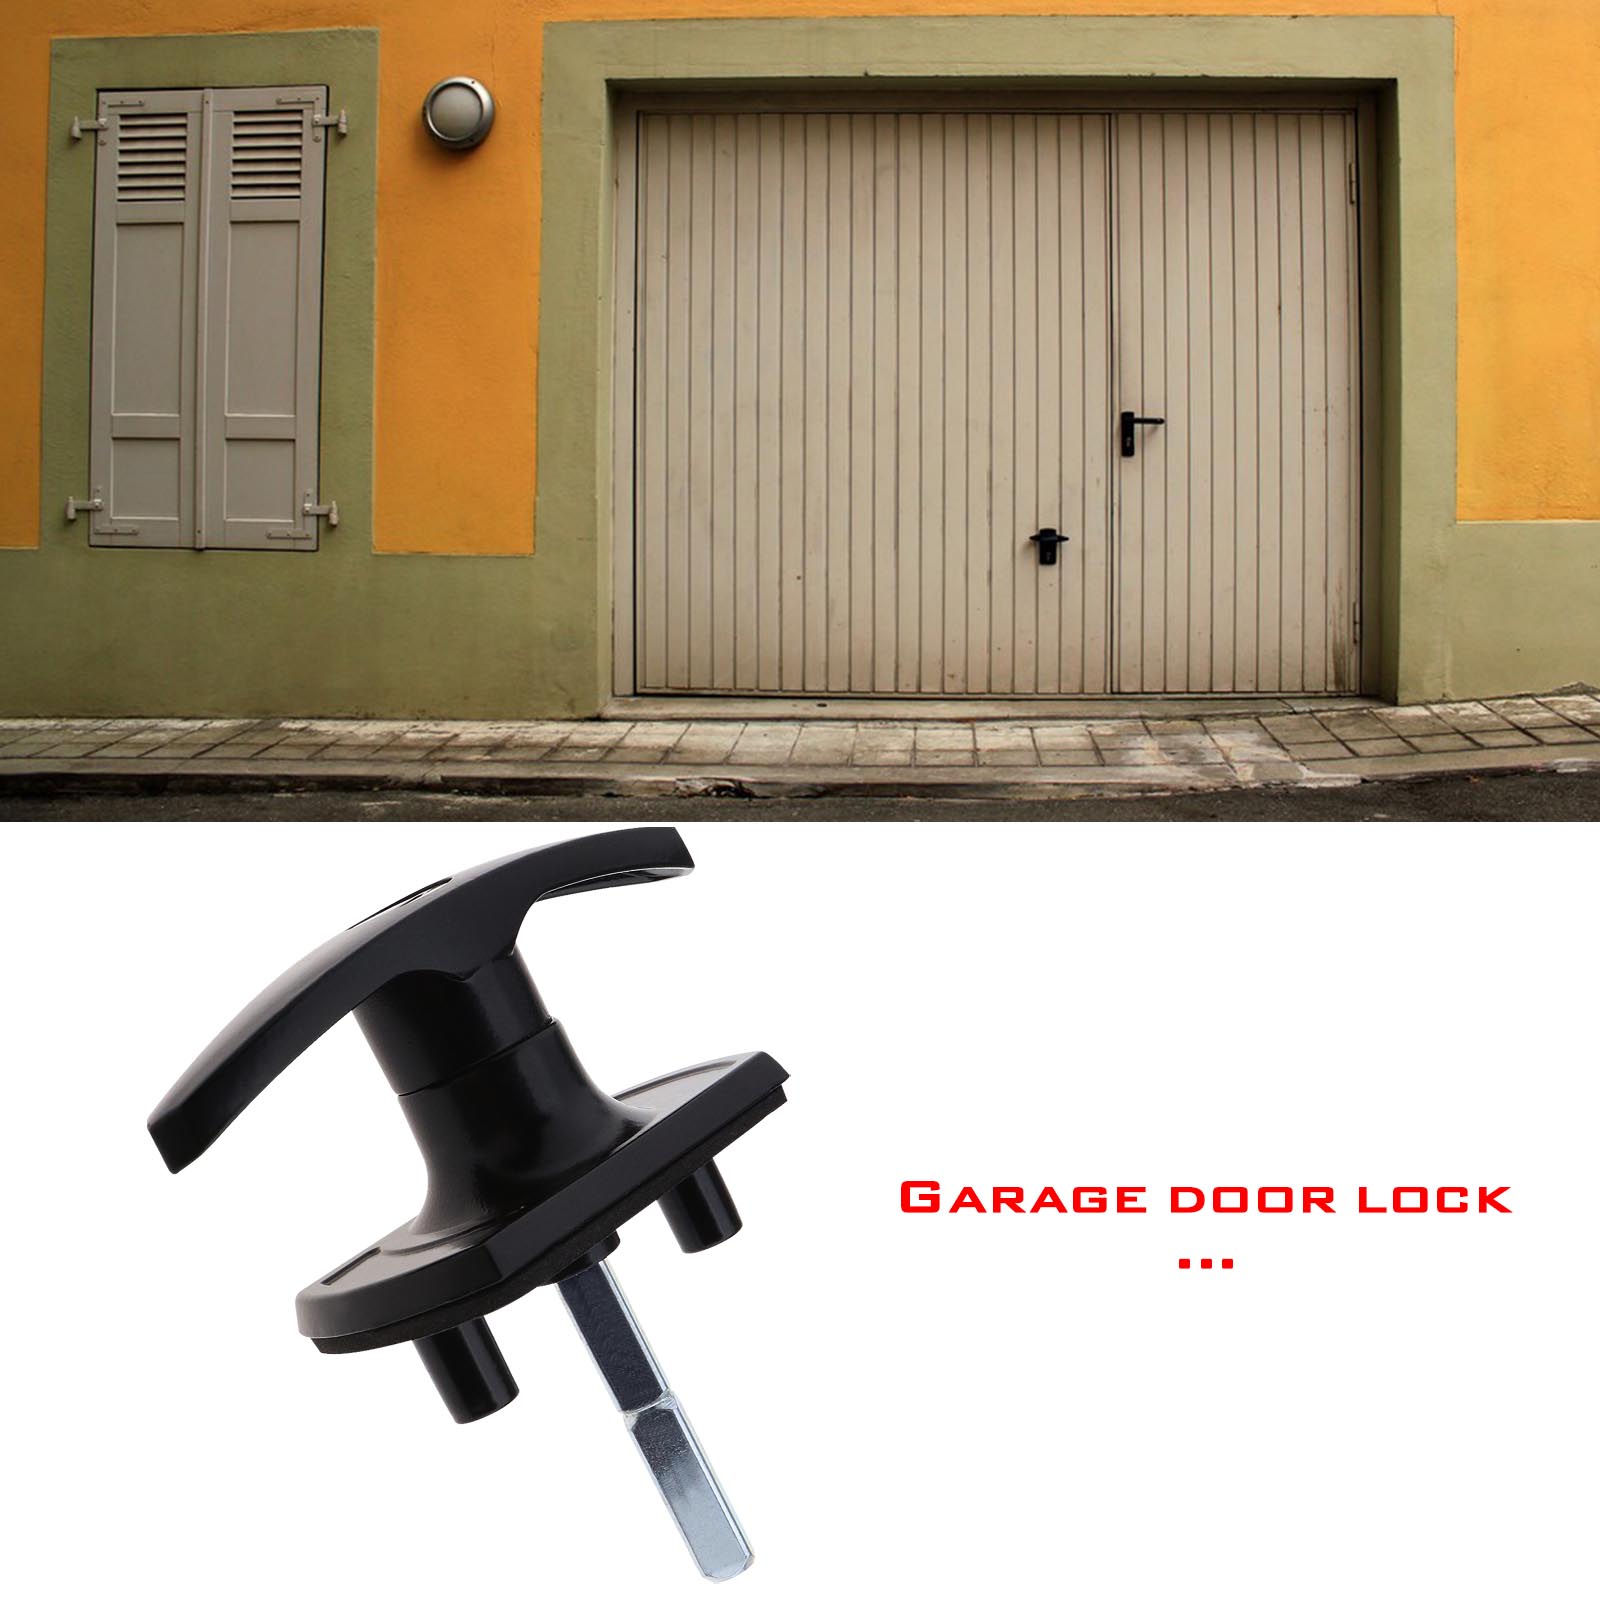 Unique Garage Door Repair Kit Ideas in 2022